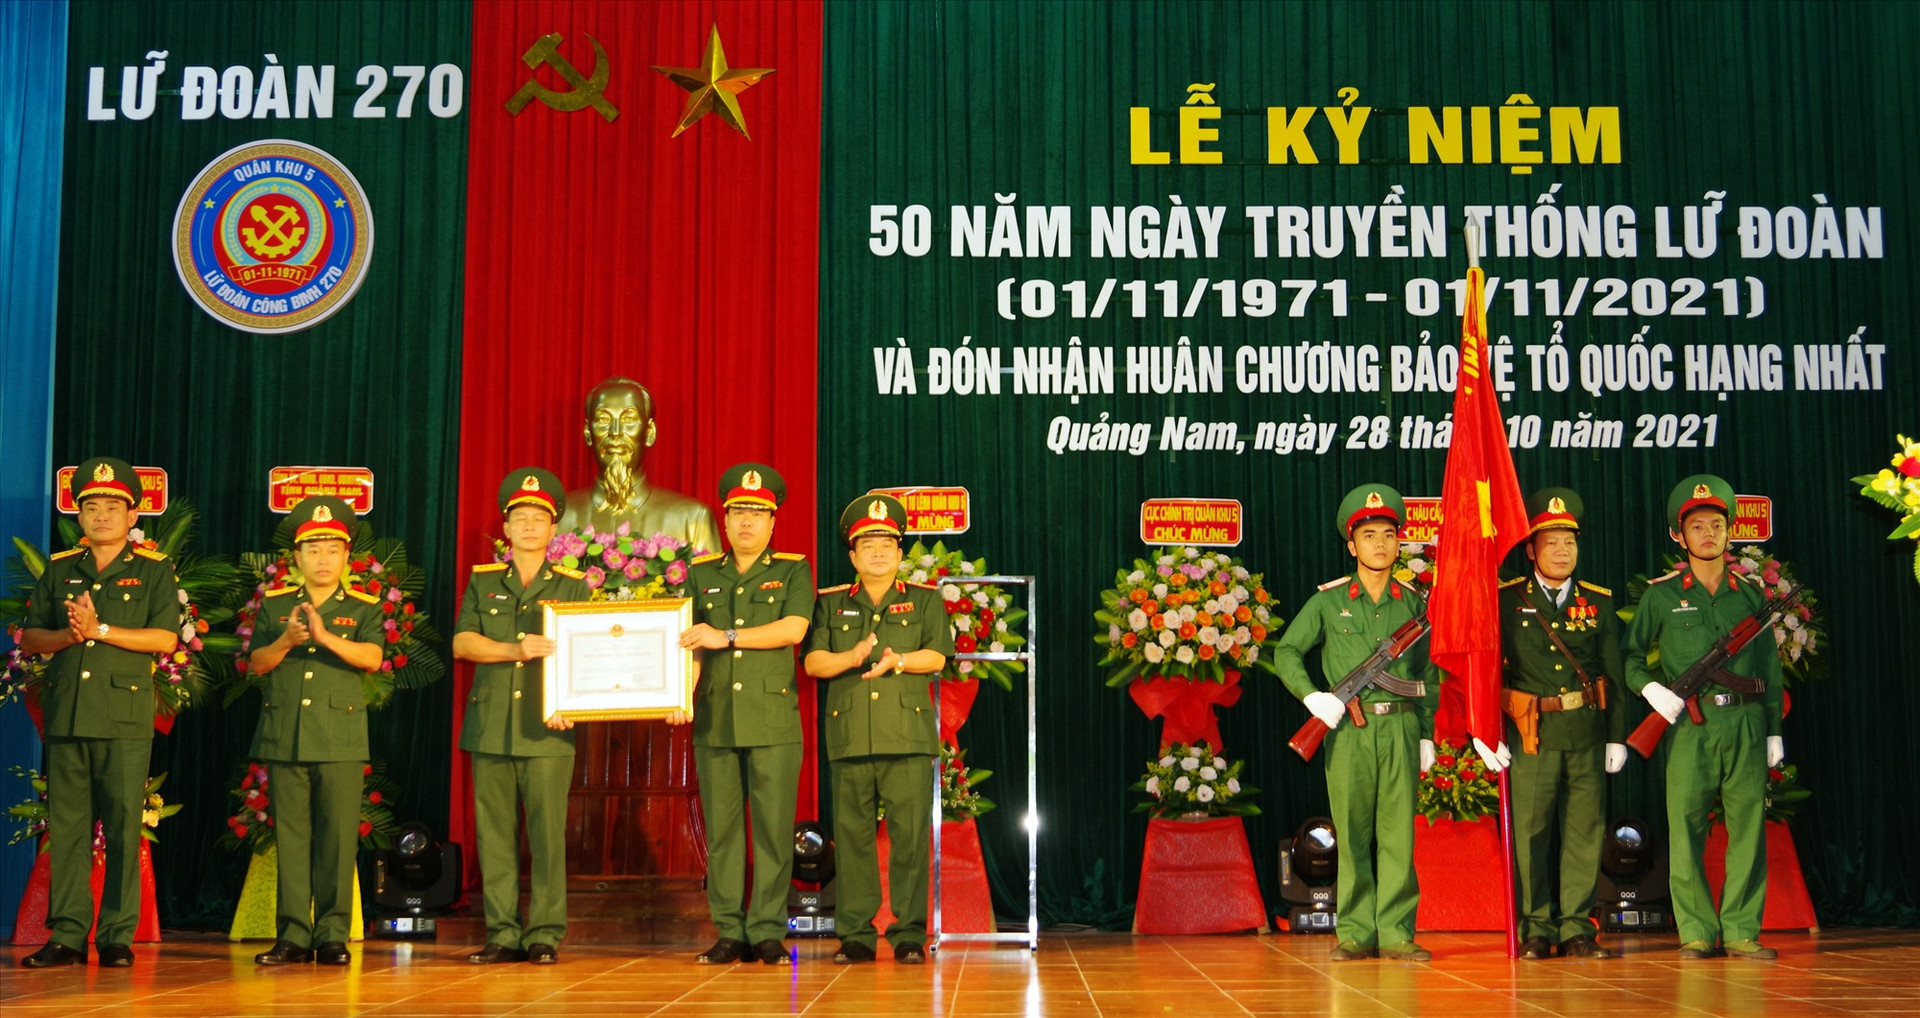 Lữ đoàn 270 tổ chức đón nhận huân chương bảo vệ Tổ quốc hạng nhất.